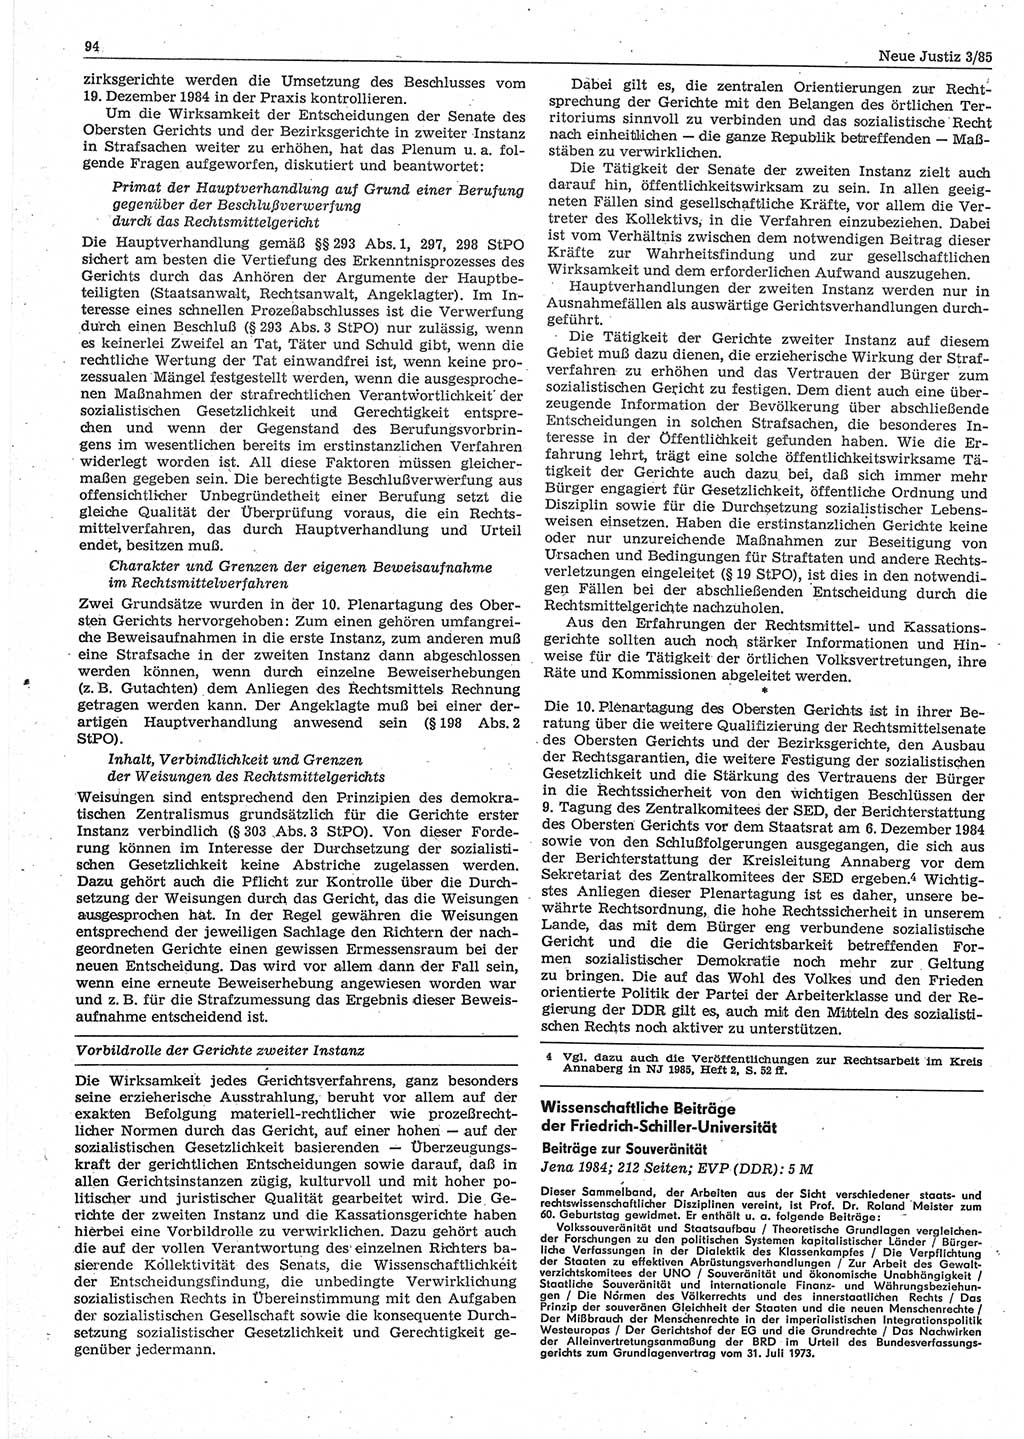 Neue Justiz (NJ), Zeitschrift für sozialistisches Recht und Gesetzlichkeit [Deutsche Demokratische Republik (DDR)], 39. Jahrgang 1985, Seite 94 (NJ DDR 1985, S. 94)